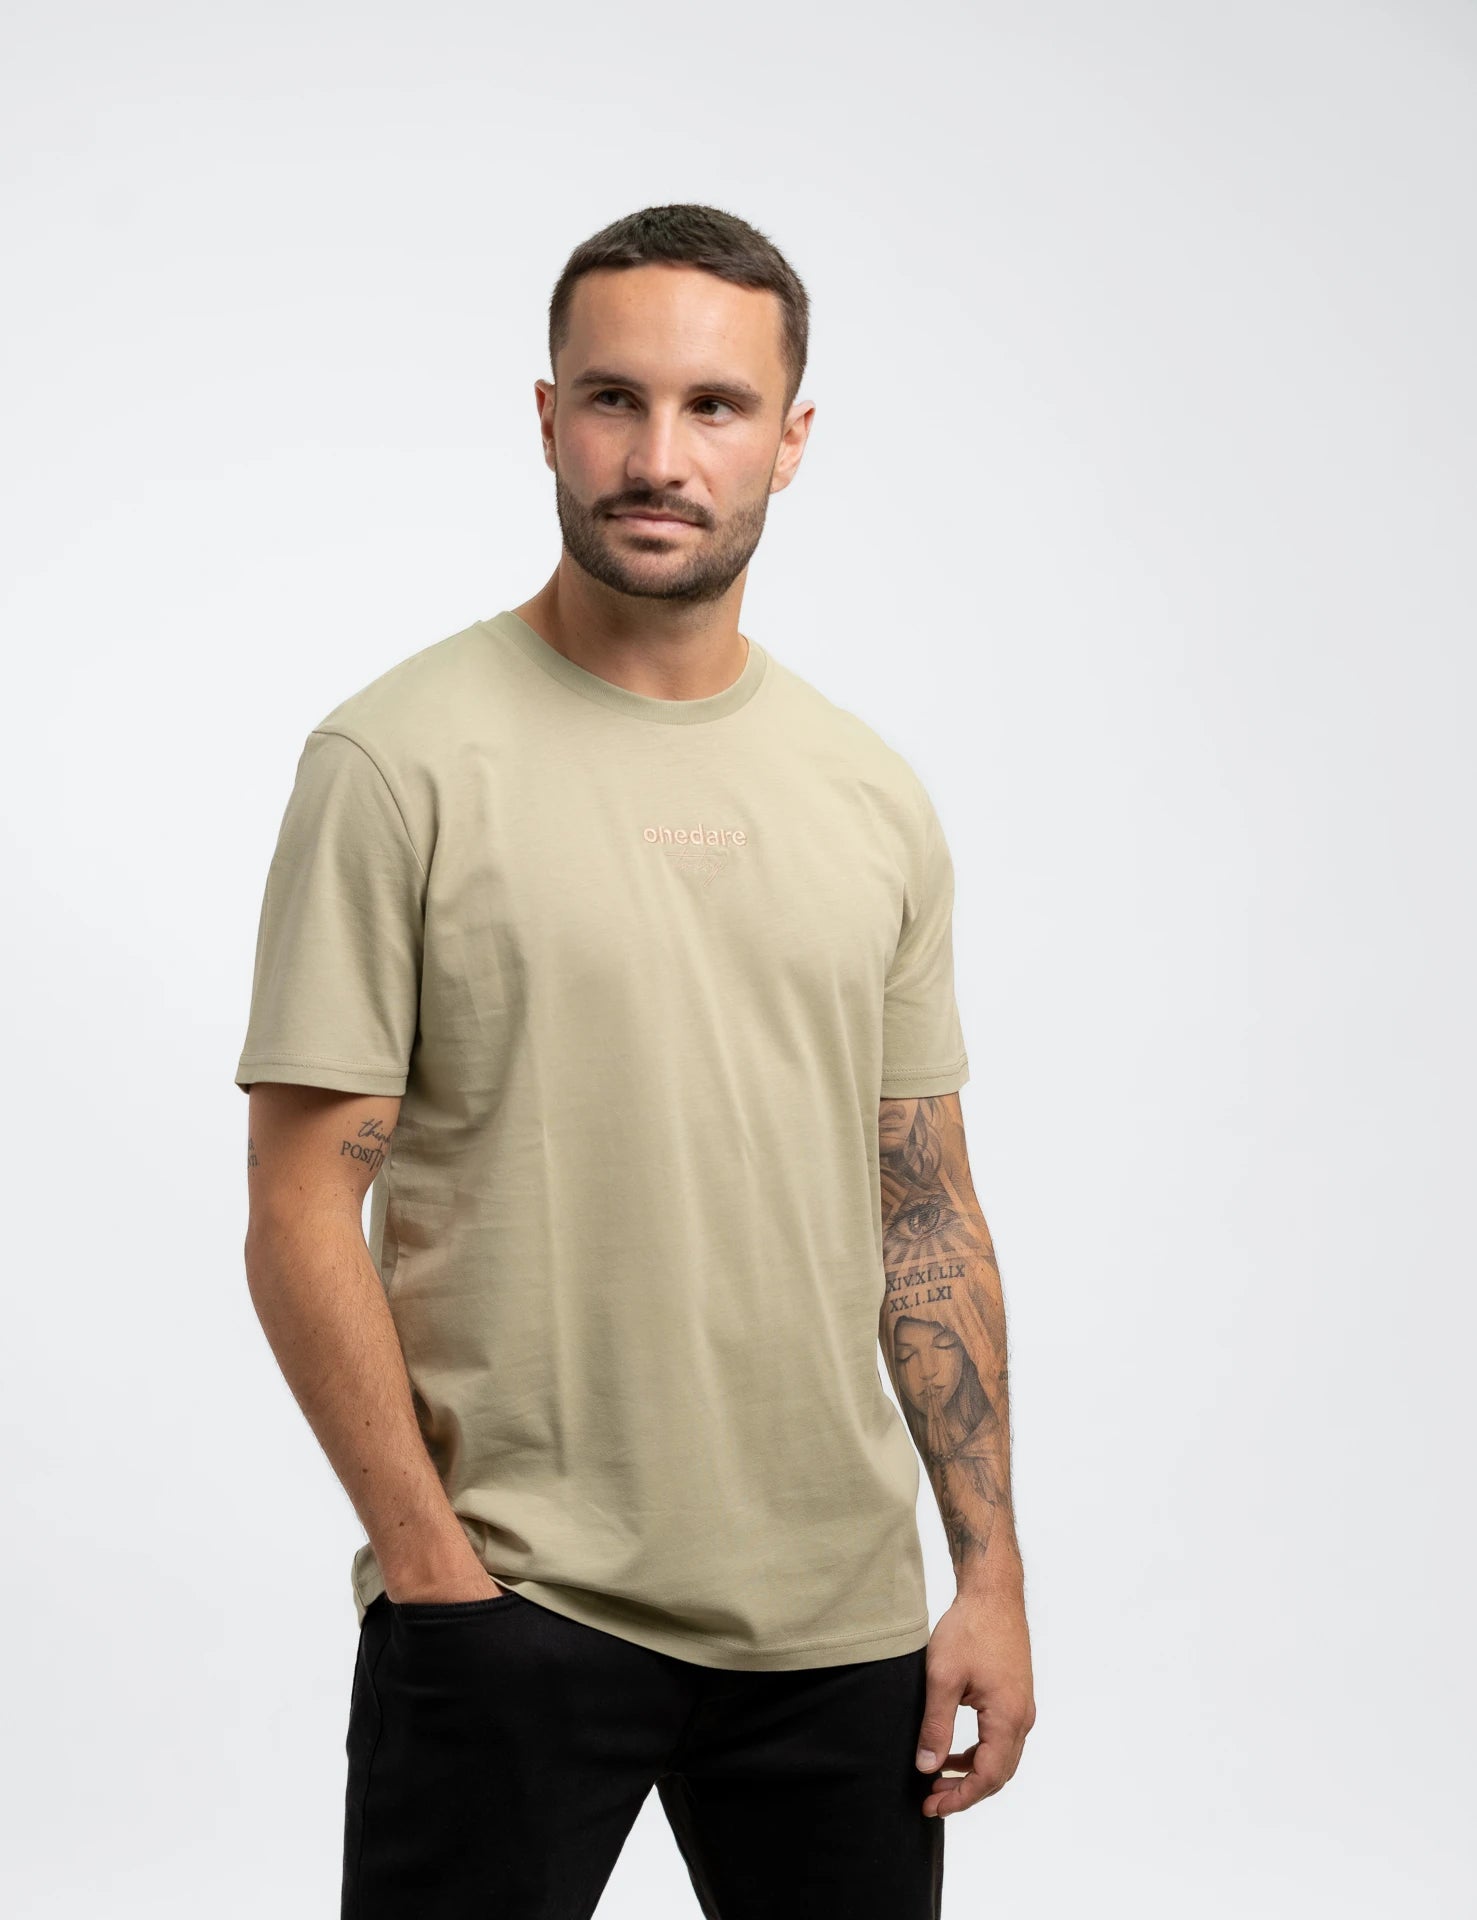 Onedare to | Bio-Baumwolle try sand aus T-Shirt classic Shirt